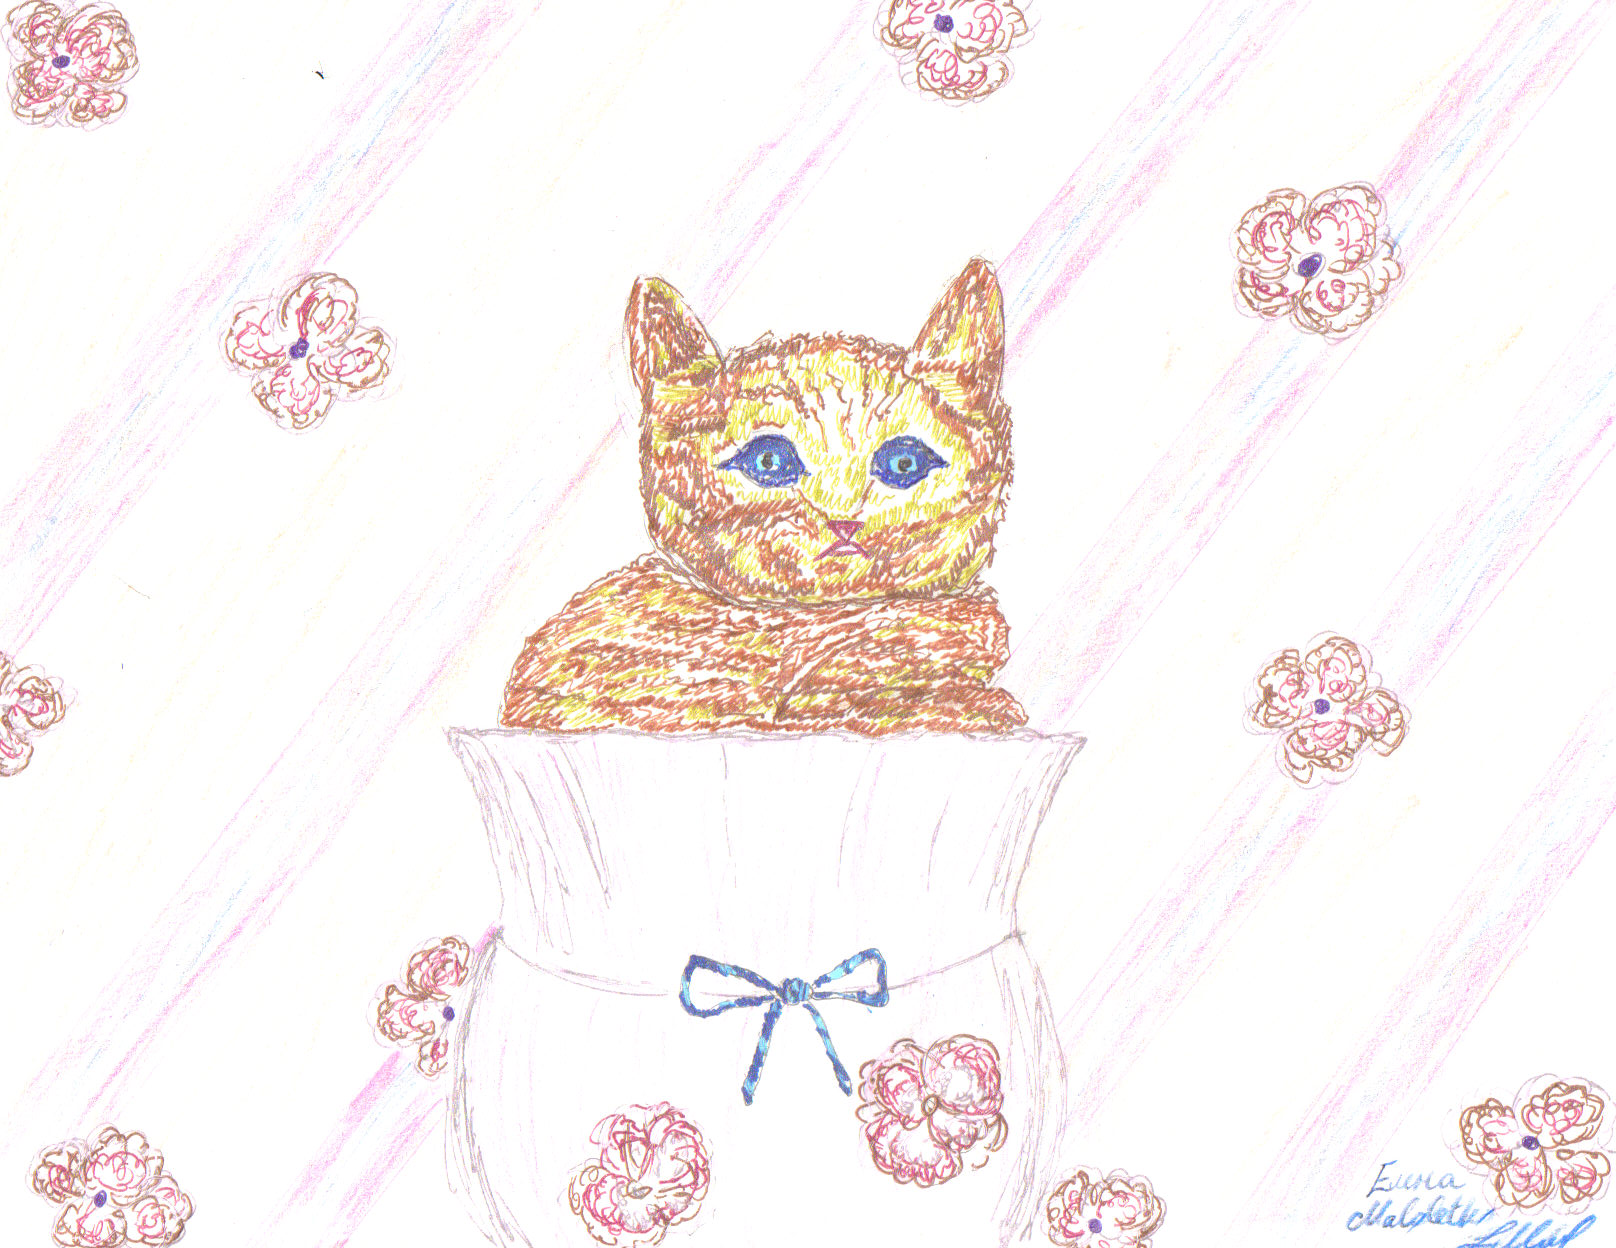 Kitty in a Pot by Spottedfur